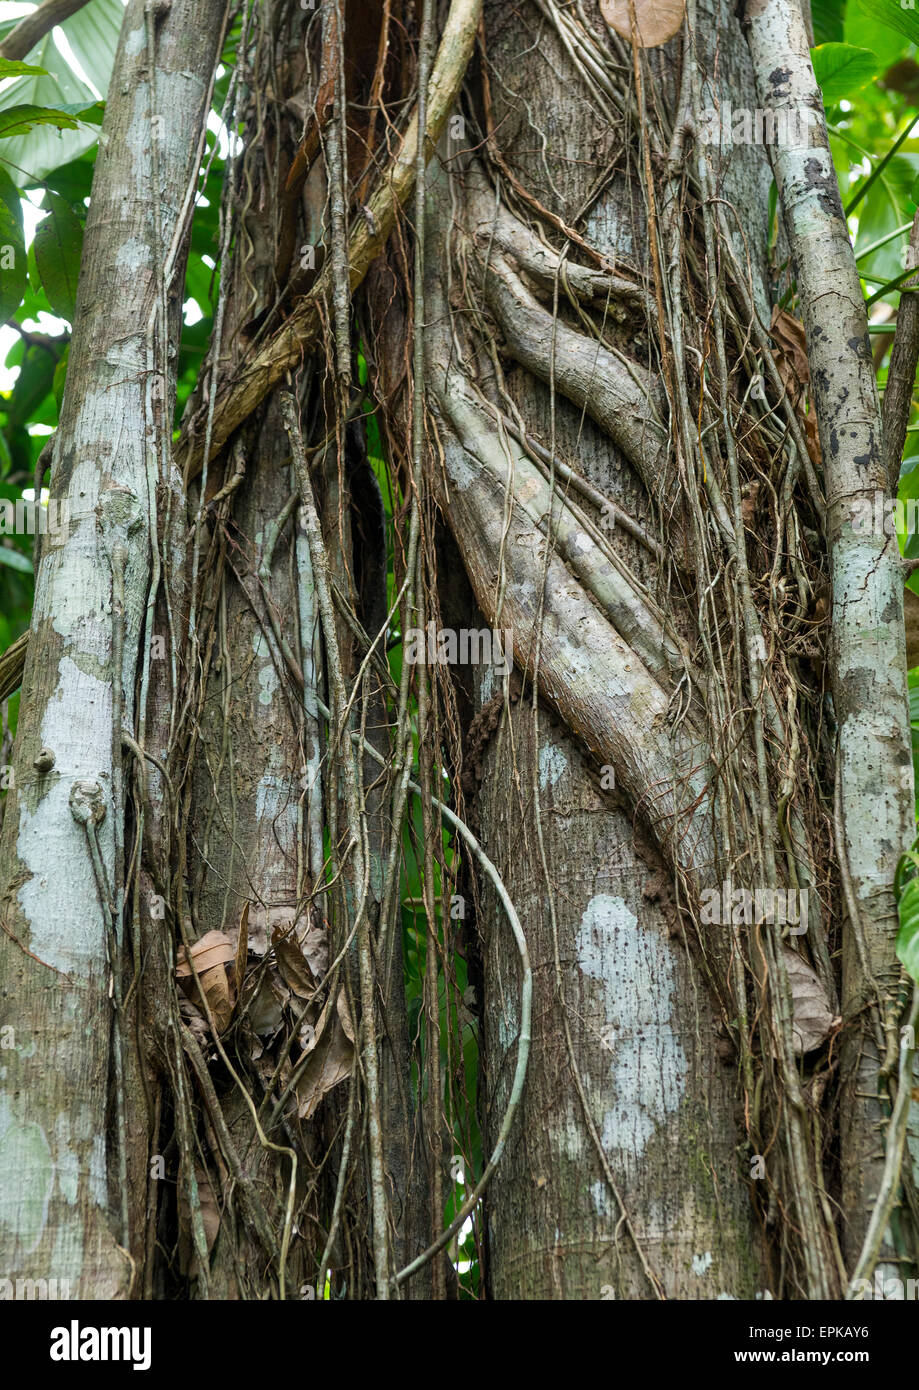 Panama, Darien Province, Filo Del Tallo, Vines Wrapped Around A Tree In Darien National Park Stock Photo